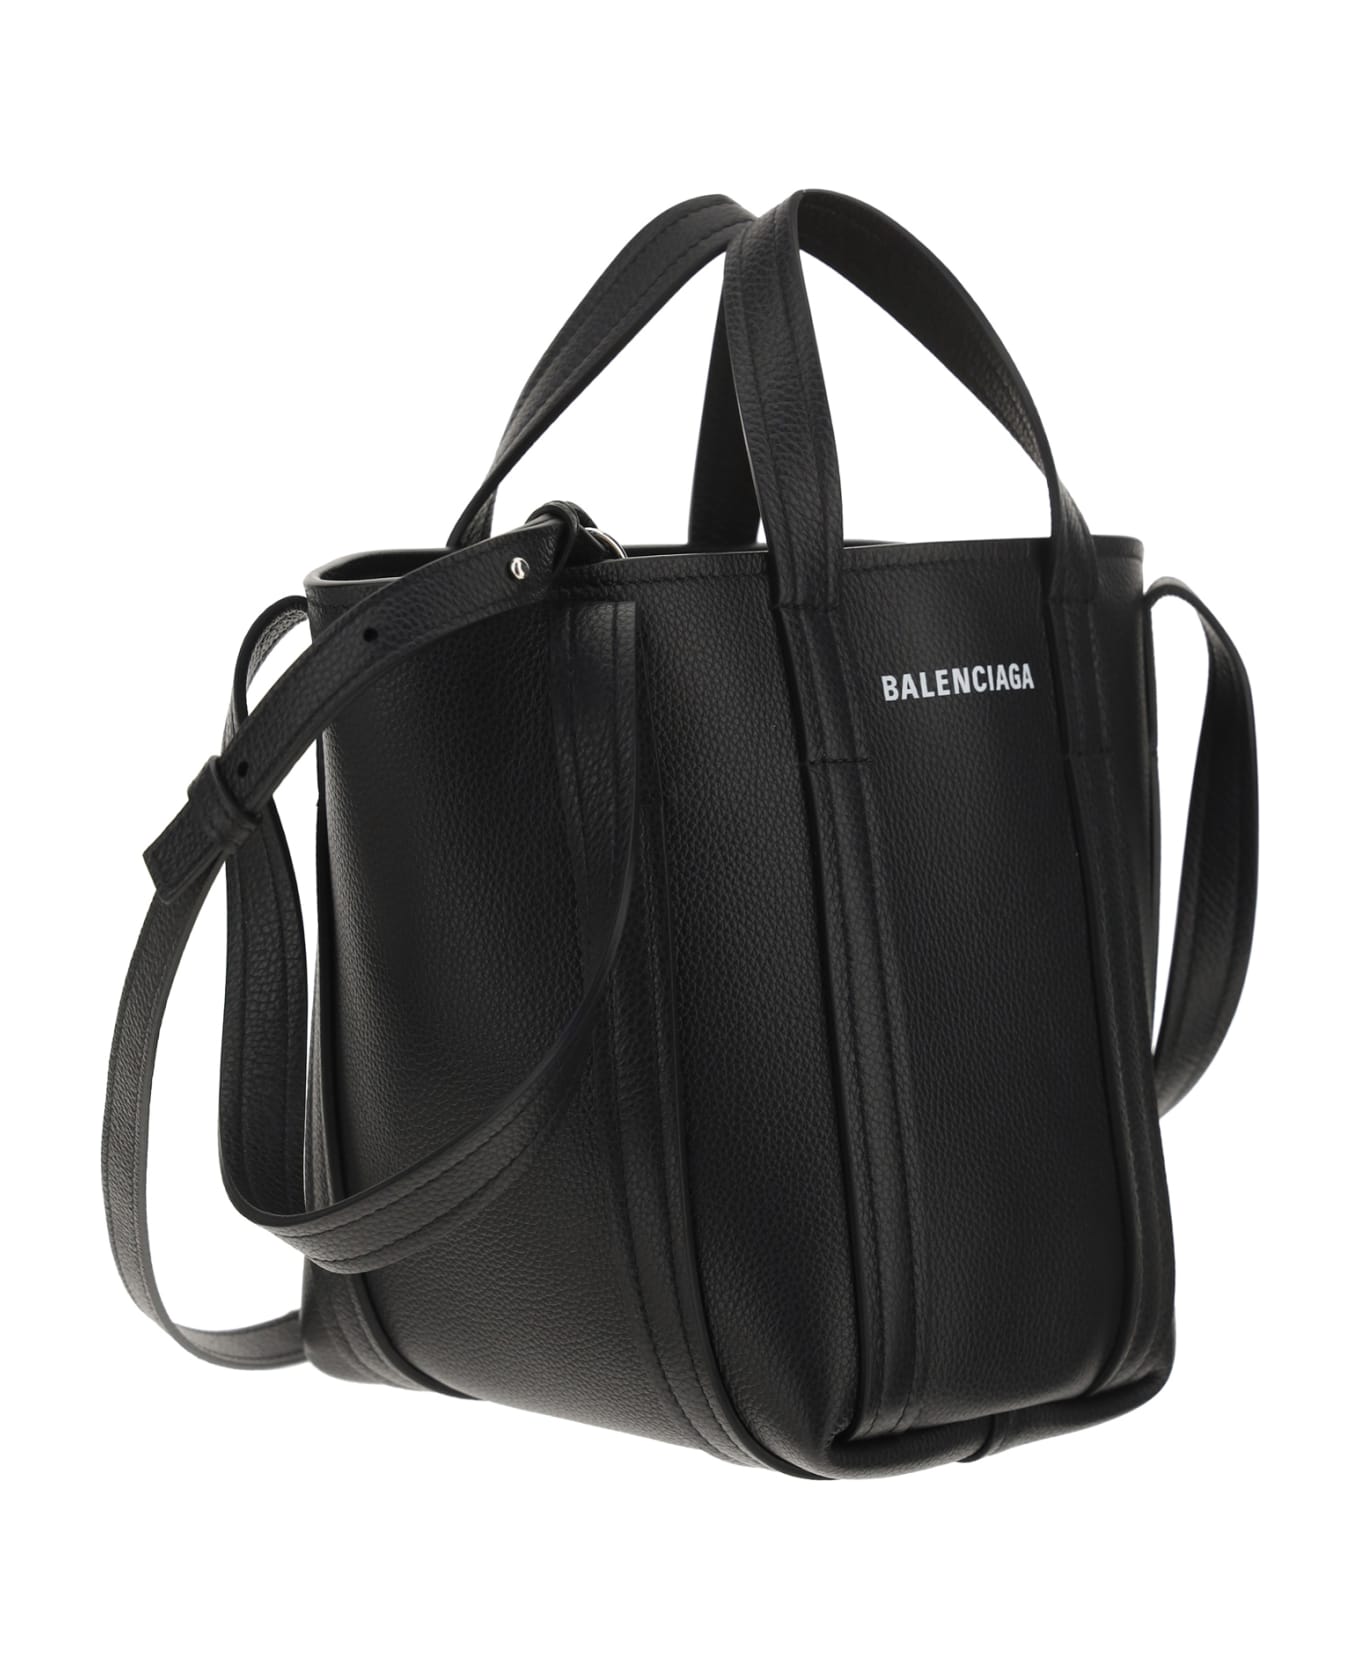 Balenciaga Everyday Handbag - Black